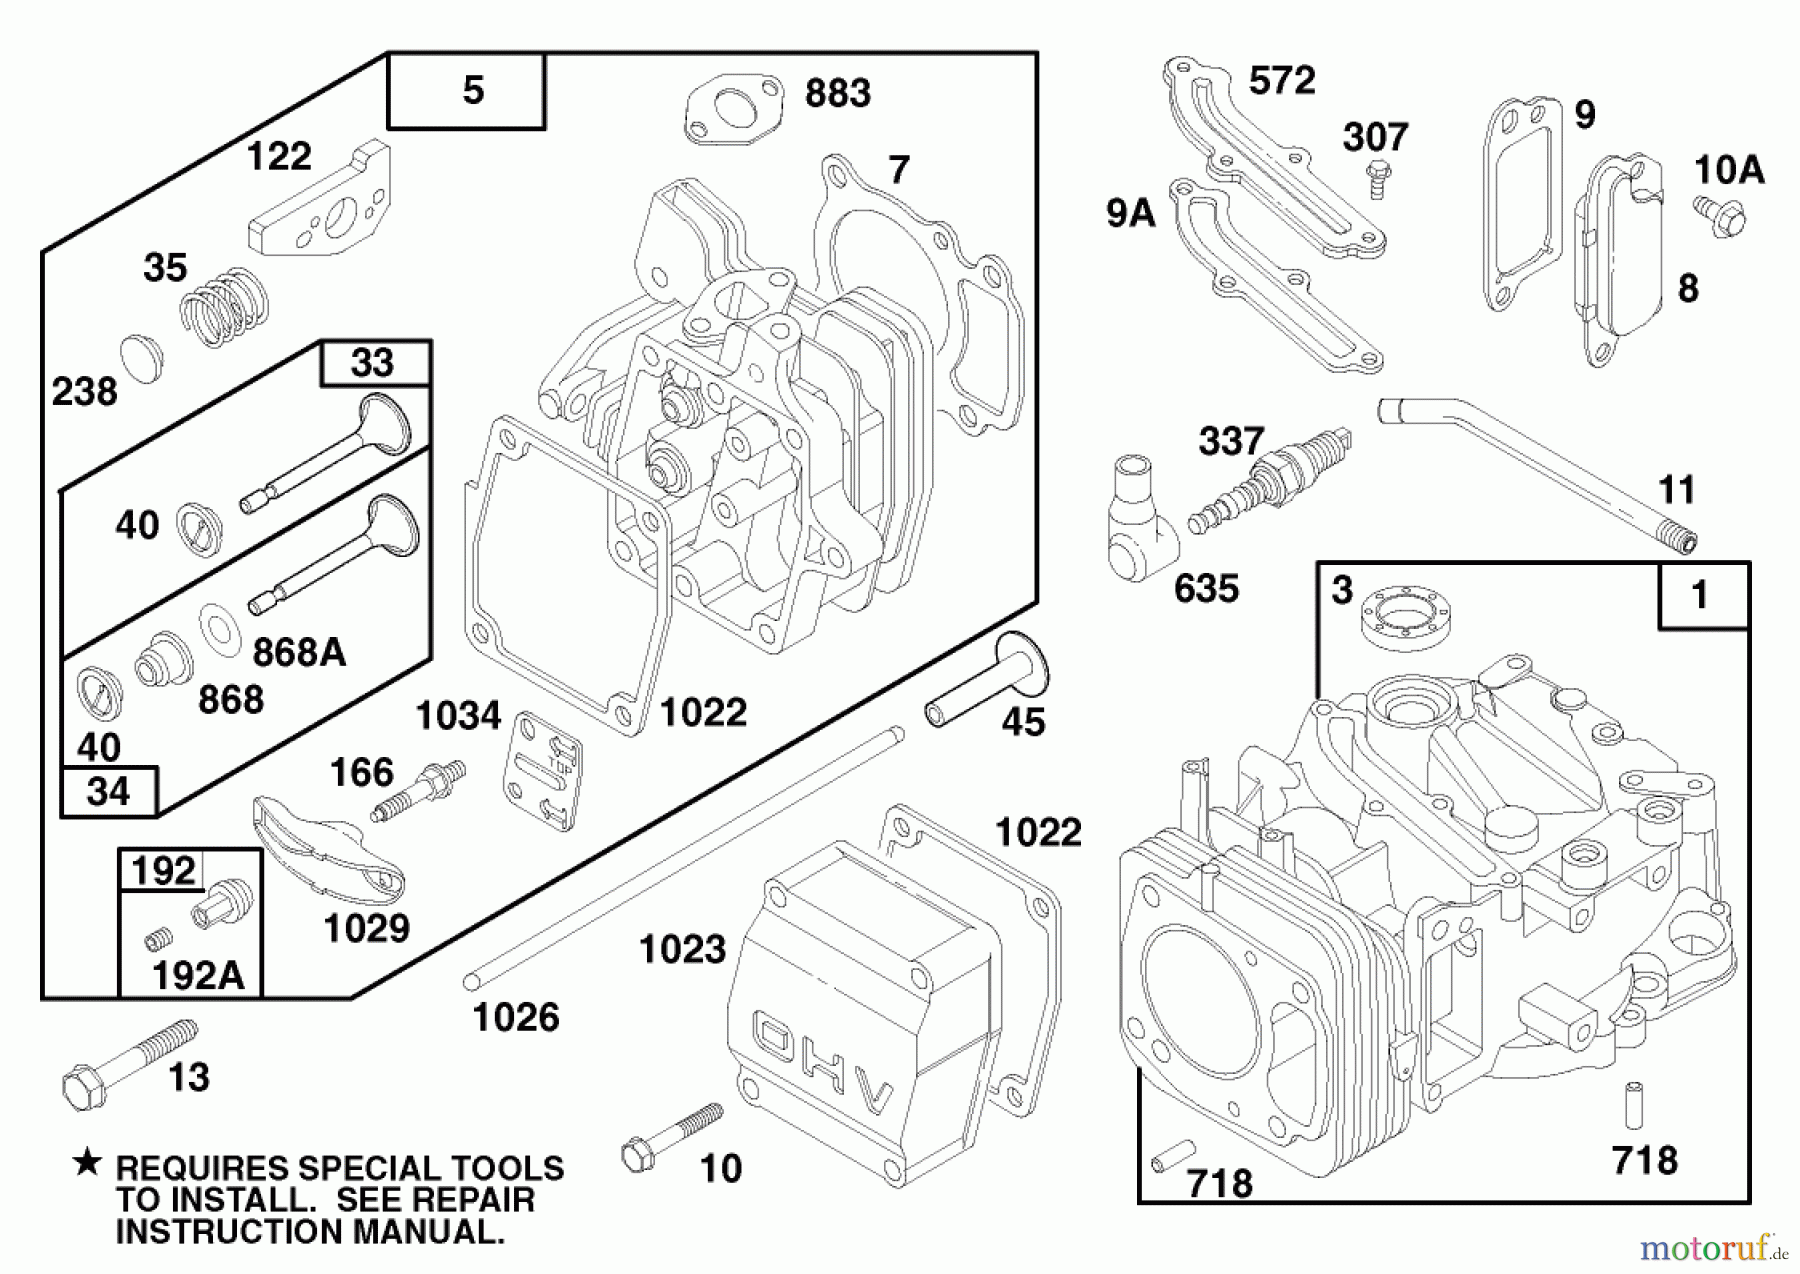  Toro Neu Mowers, Walk-Behind Seite 1 20466 - Toro Lawnmower, 1996 (6900001-6999999) ENGINE GTS 150 (MODEL NO. 20465 ONLY) #1